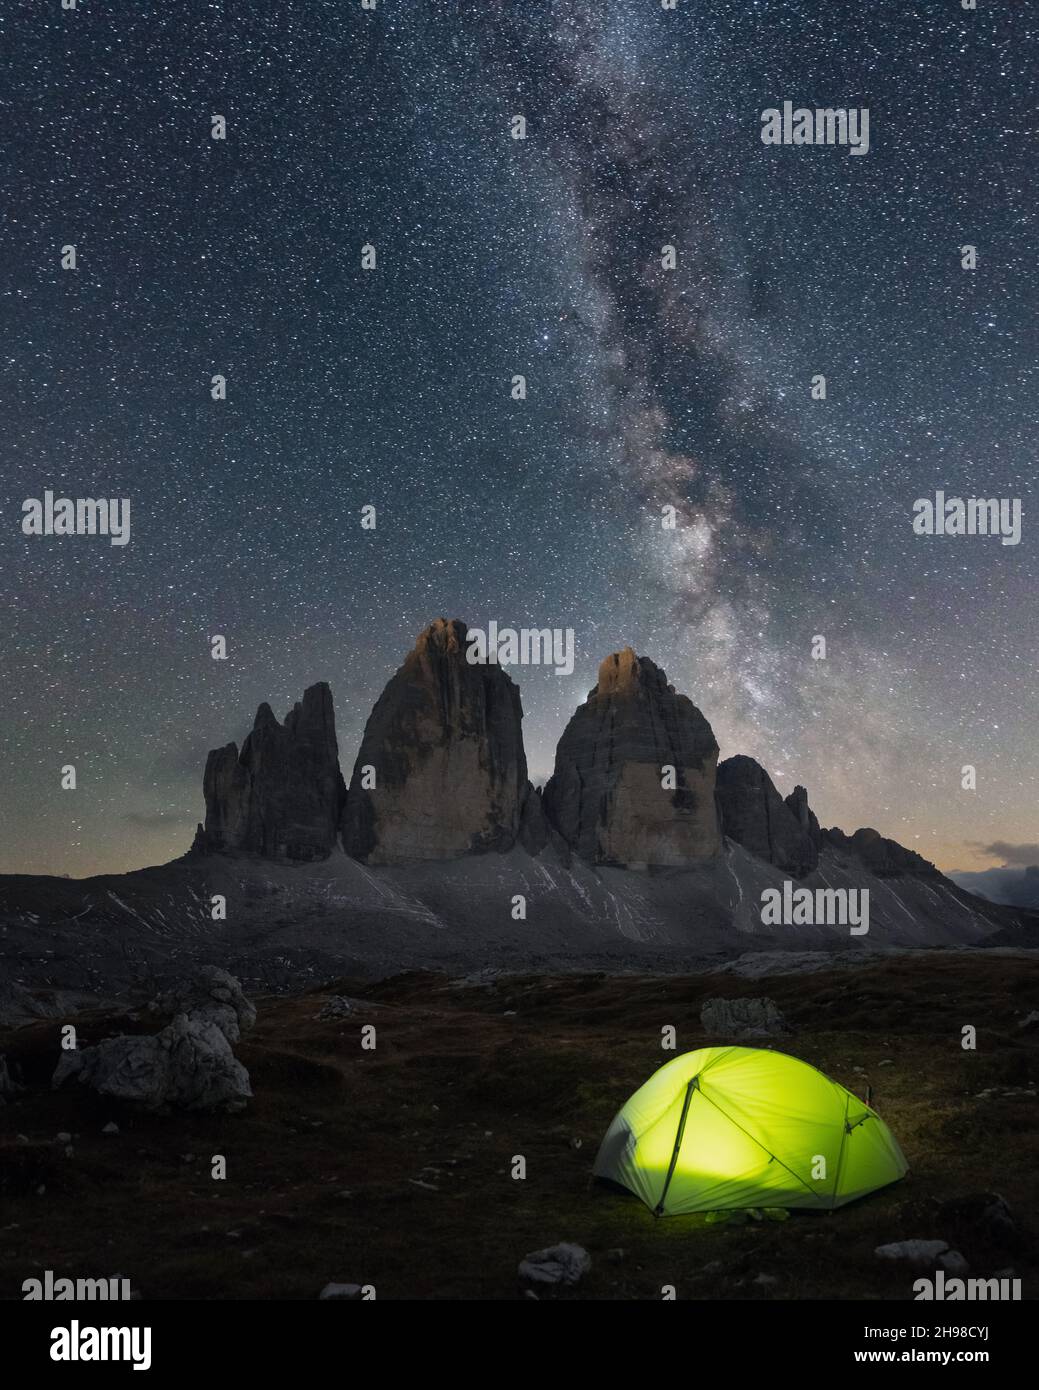 Tenda verde illuminata dall'interno contro lo sfondo di un incredibile cielo stellato e tre cime delle montagne di Lavaredo. Parco Nazionale tre Cime di Lavaredo, Dolomiti, Italia. Fotografia di paesaggio Foto Stock